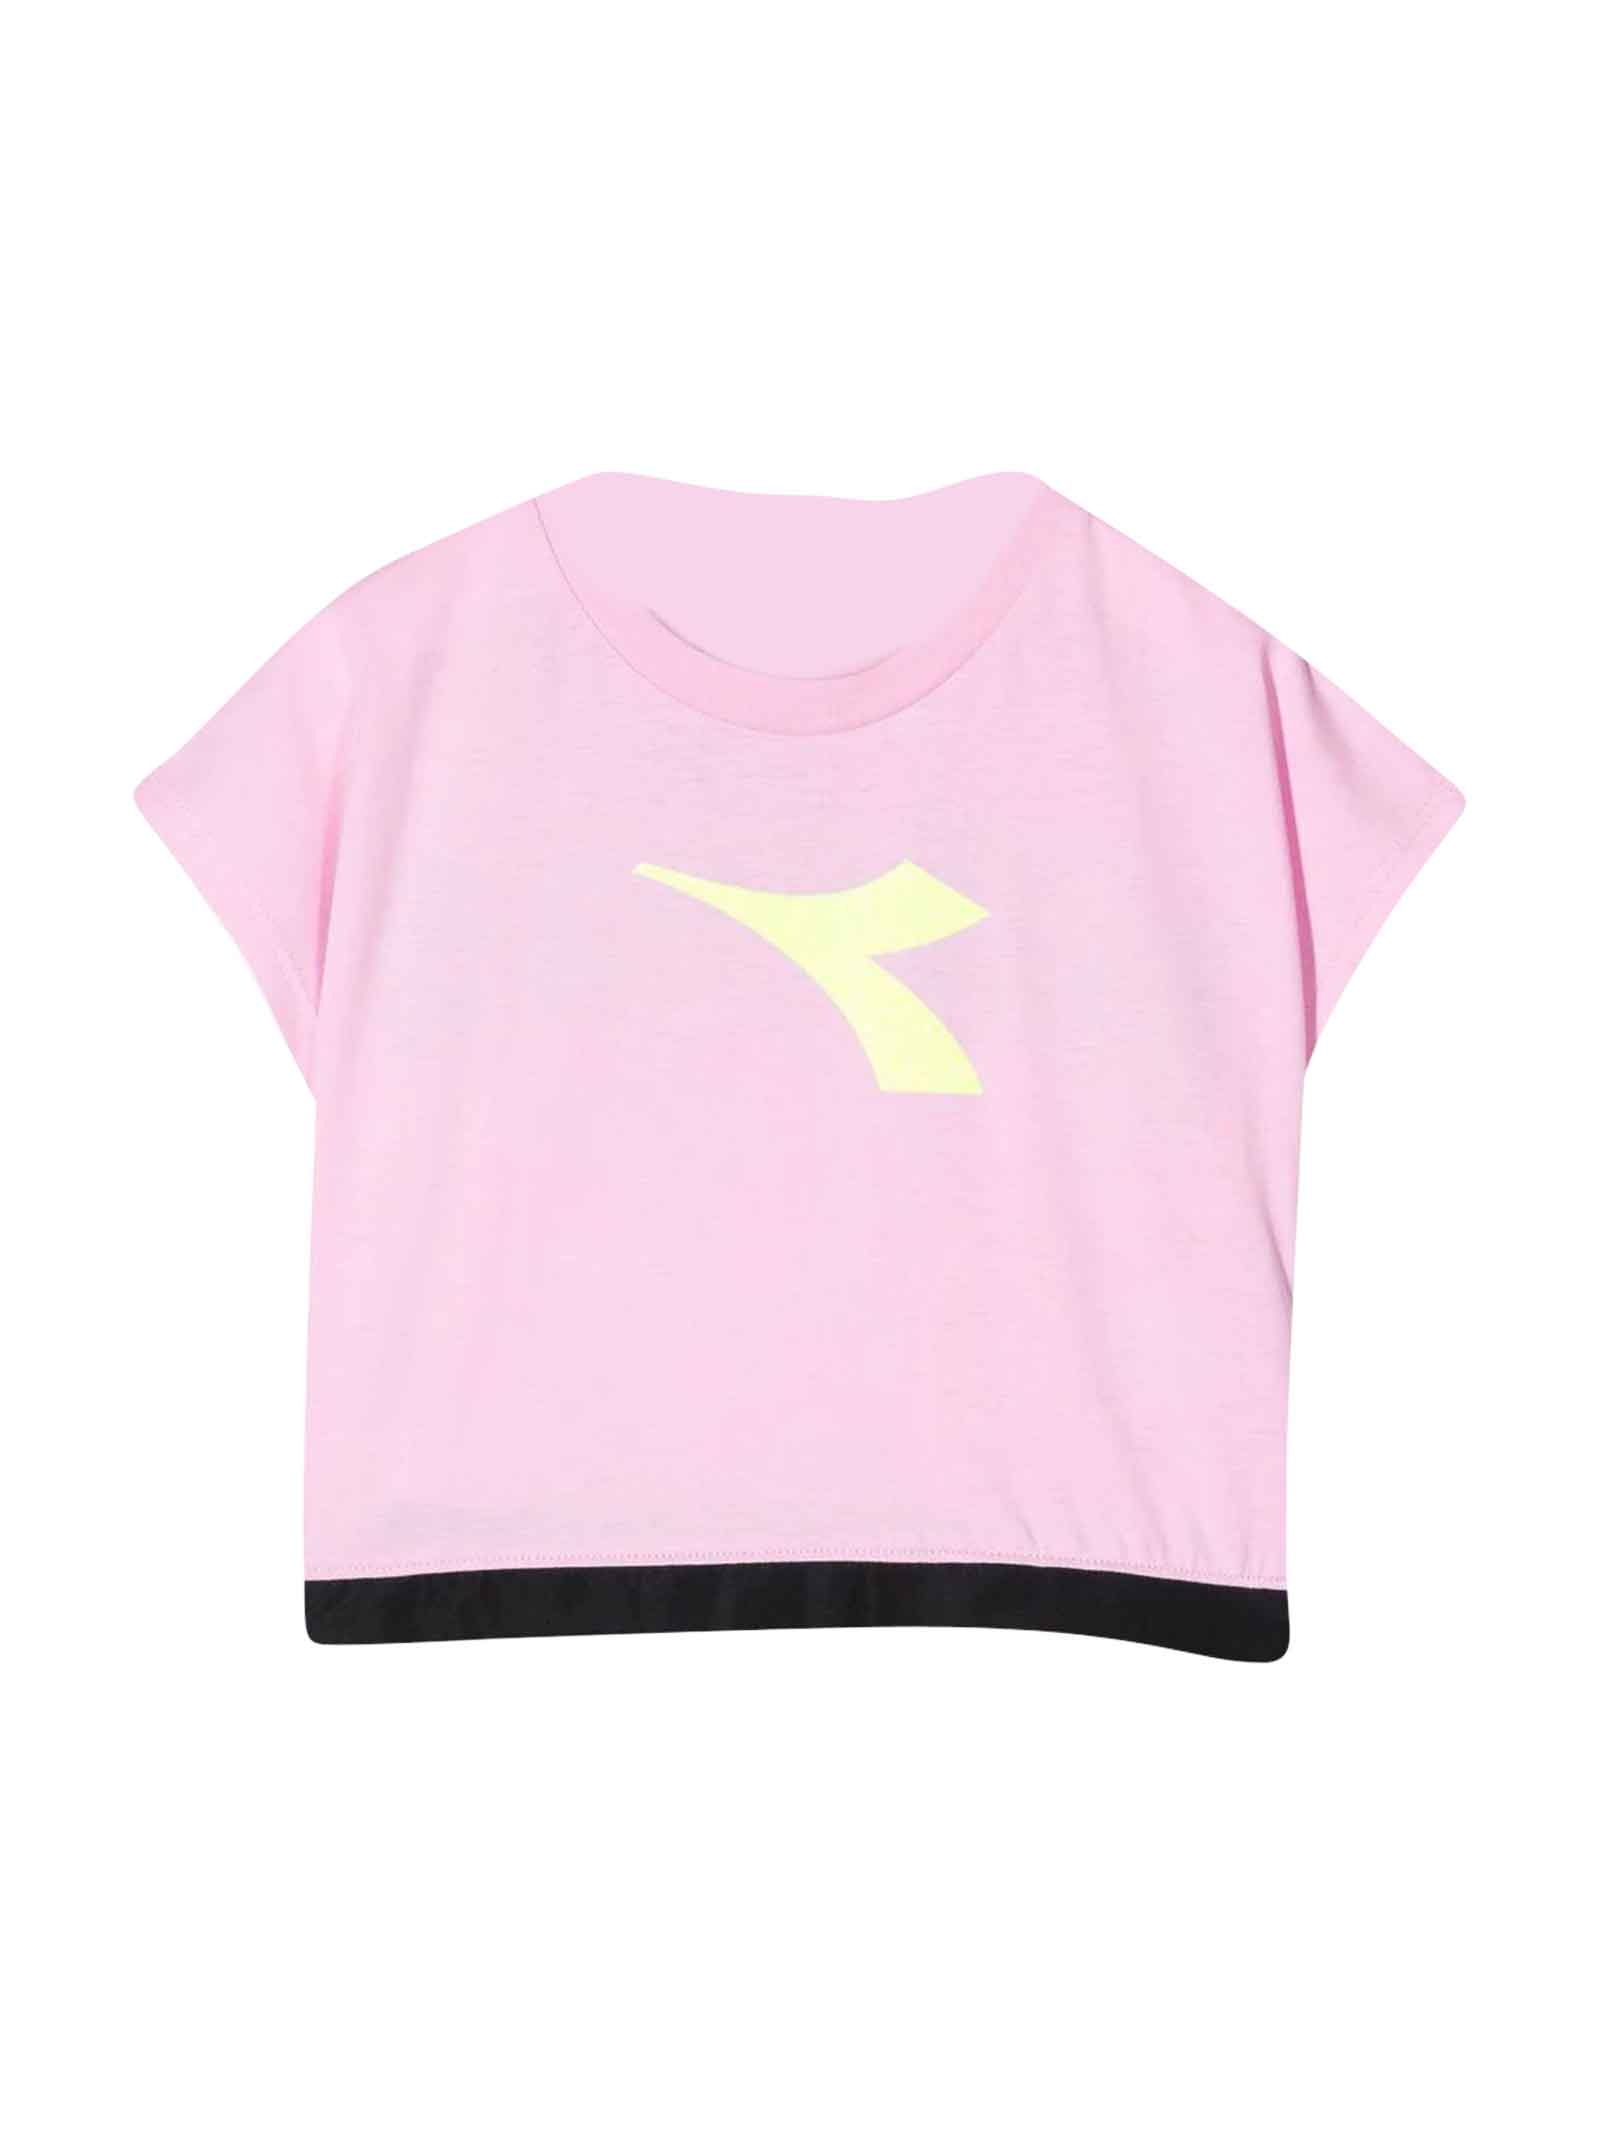 Diadora Pink T-shirt Teen Girl